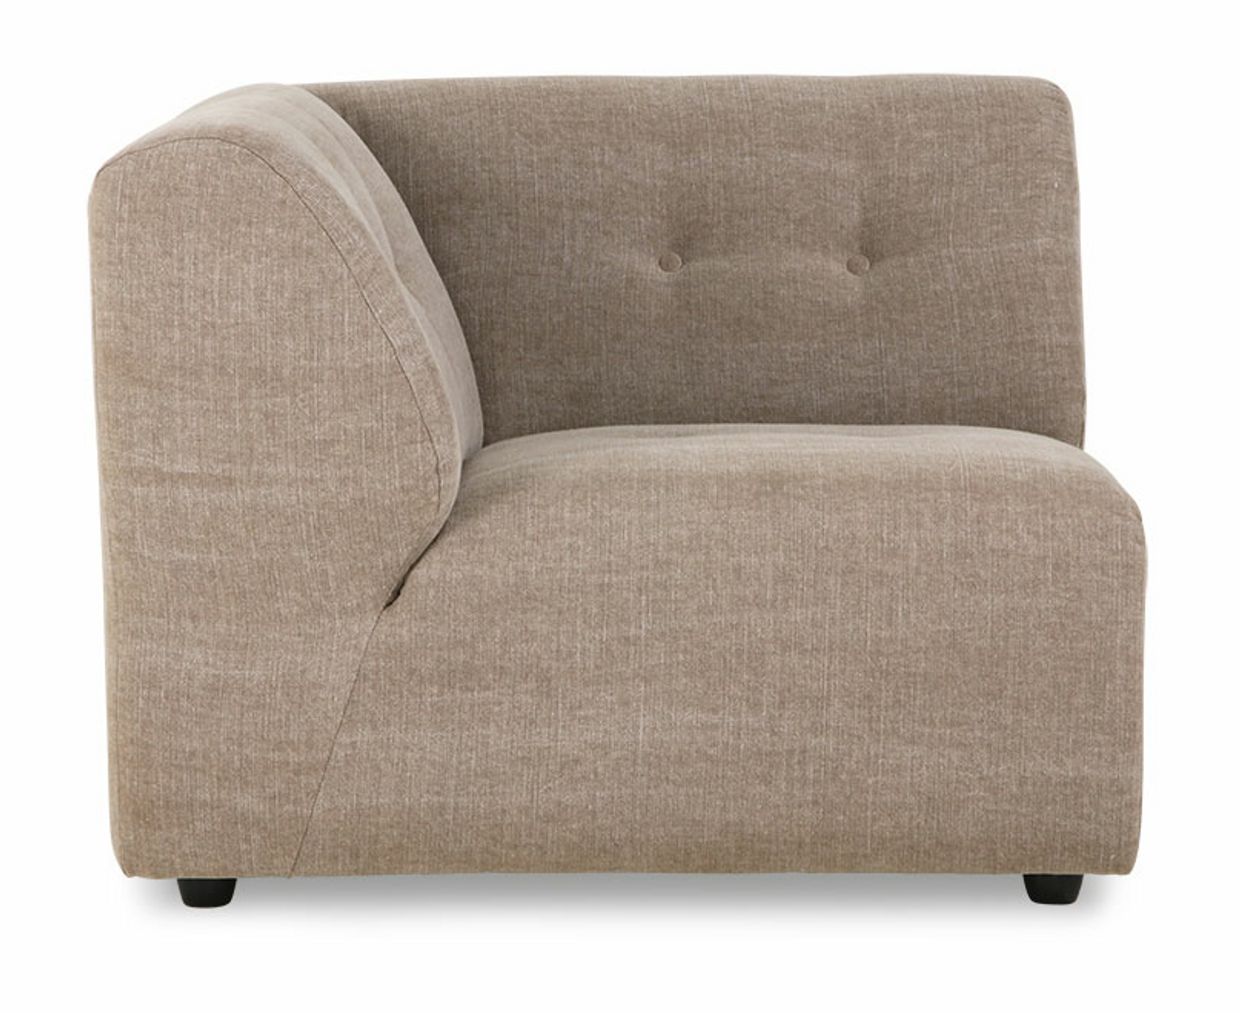 Vint couch: element left, linen blend, taupe